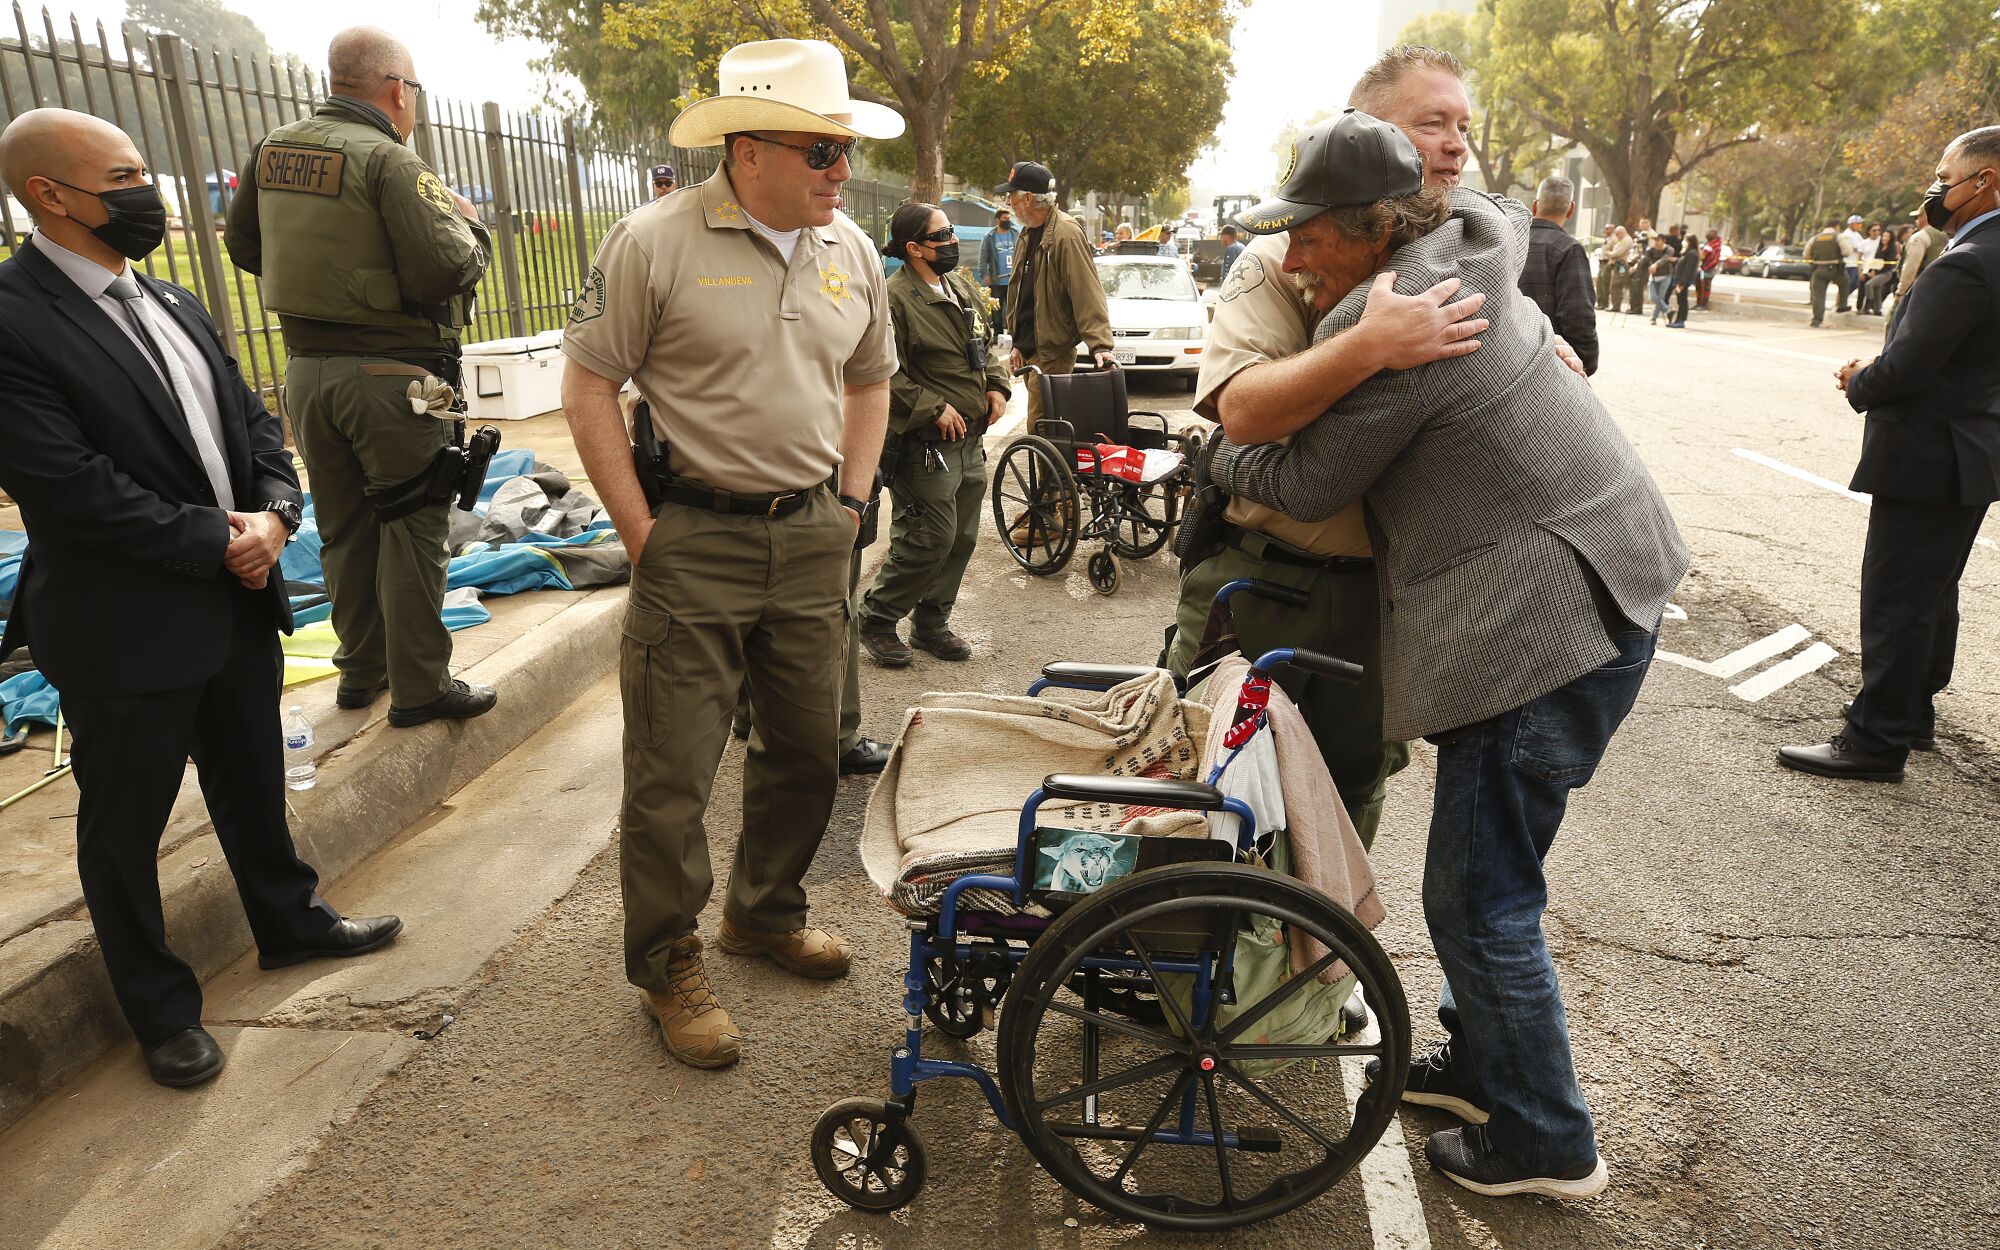 Army veteran Douglas Steven Bue hugs Sheriff's Lt. Jeff Deedrick while others look on